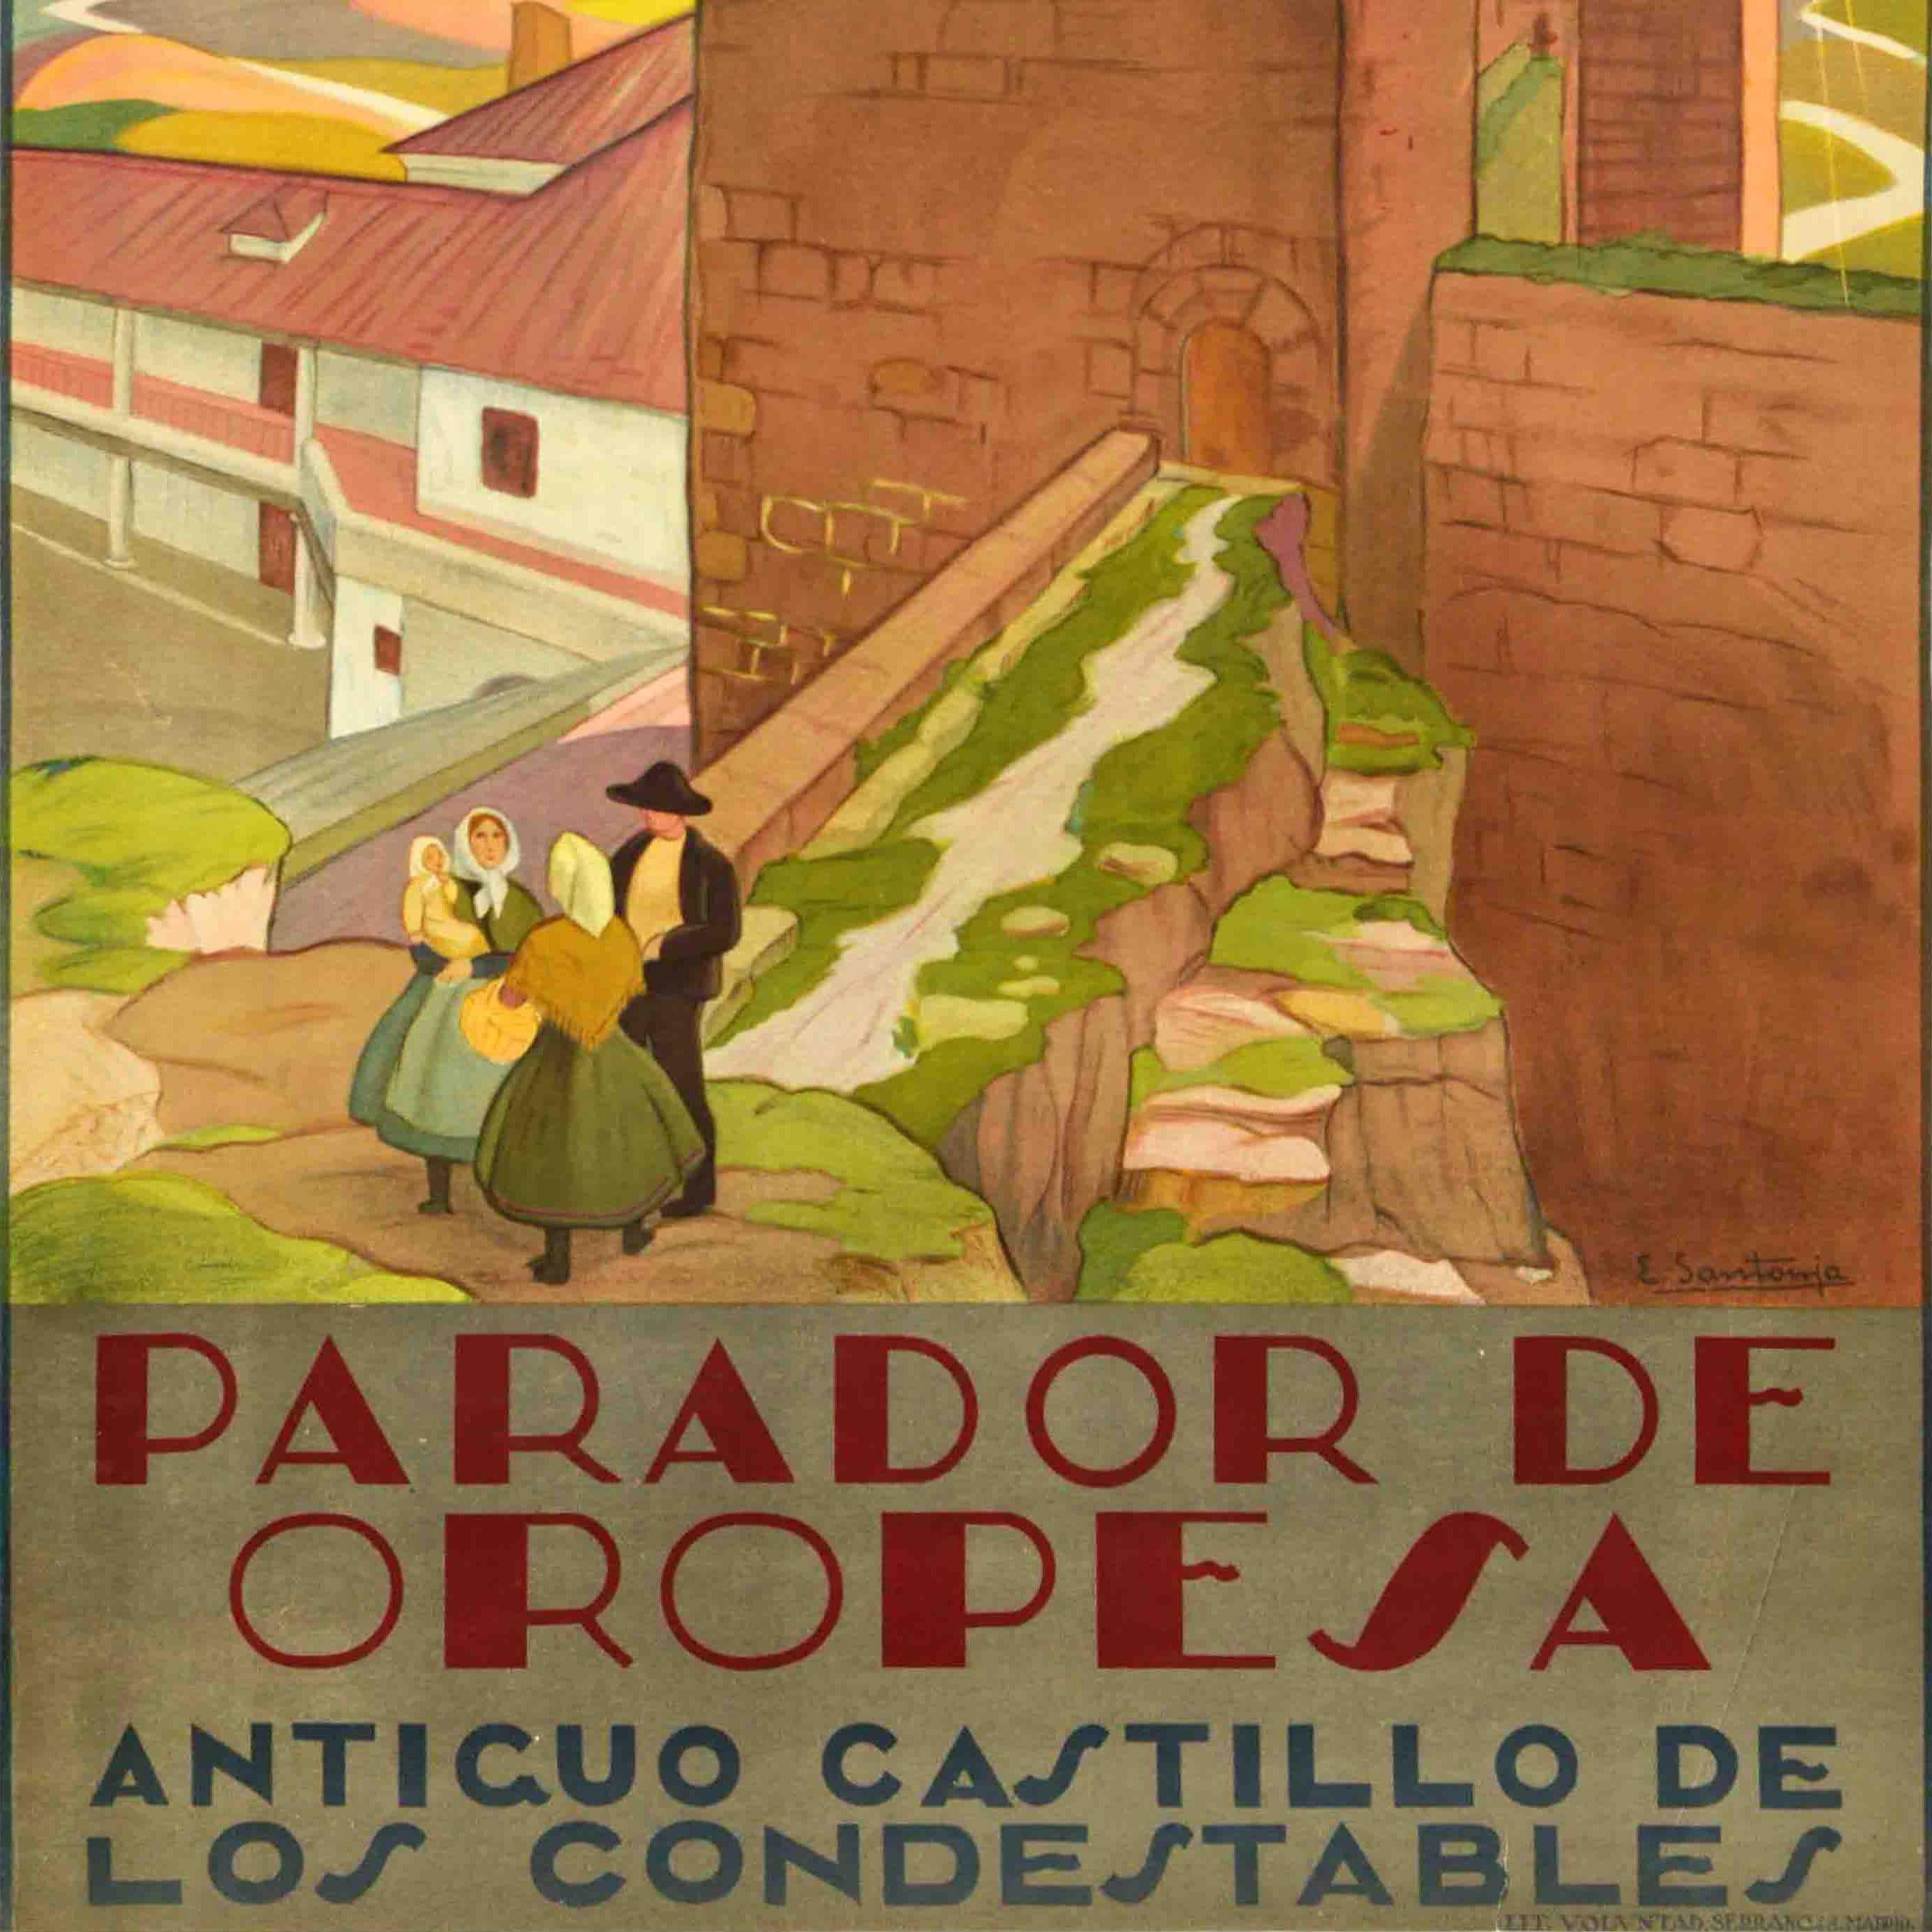 Ursprüngliches Vintage-Reiseplakat, das vom spanischen Fremdenverkehrsamt Patronato Nacional del Turismo PNT für die historische Steinburg von Oropesa in Toledo Spanien herausgegeben wurde. Es zeigt eine Gruppe von Menschen in traditioneller